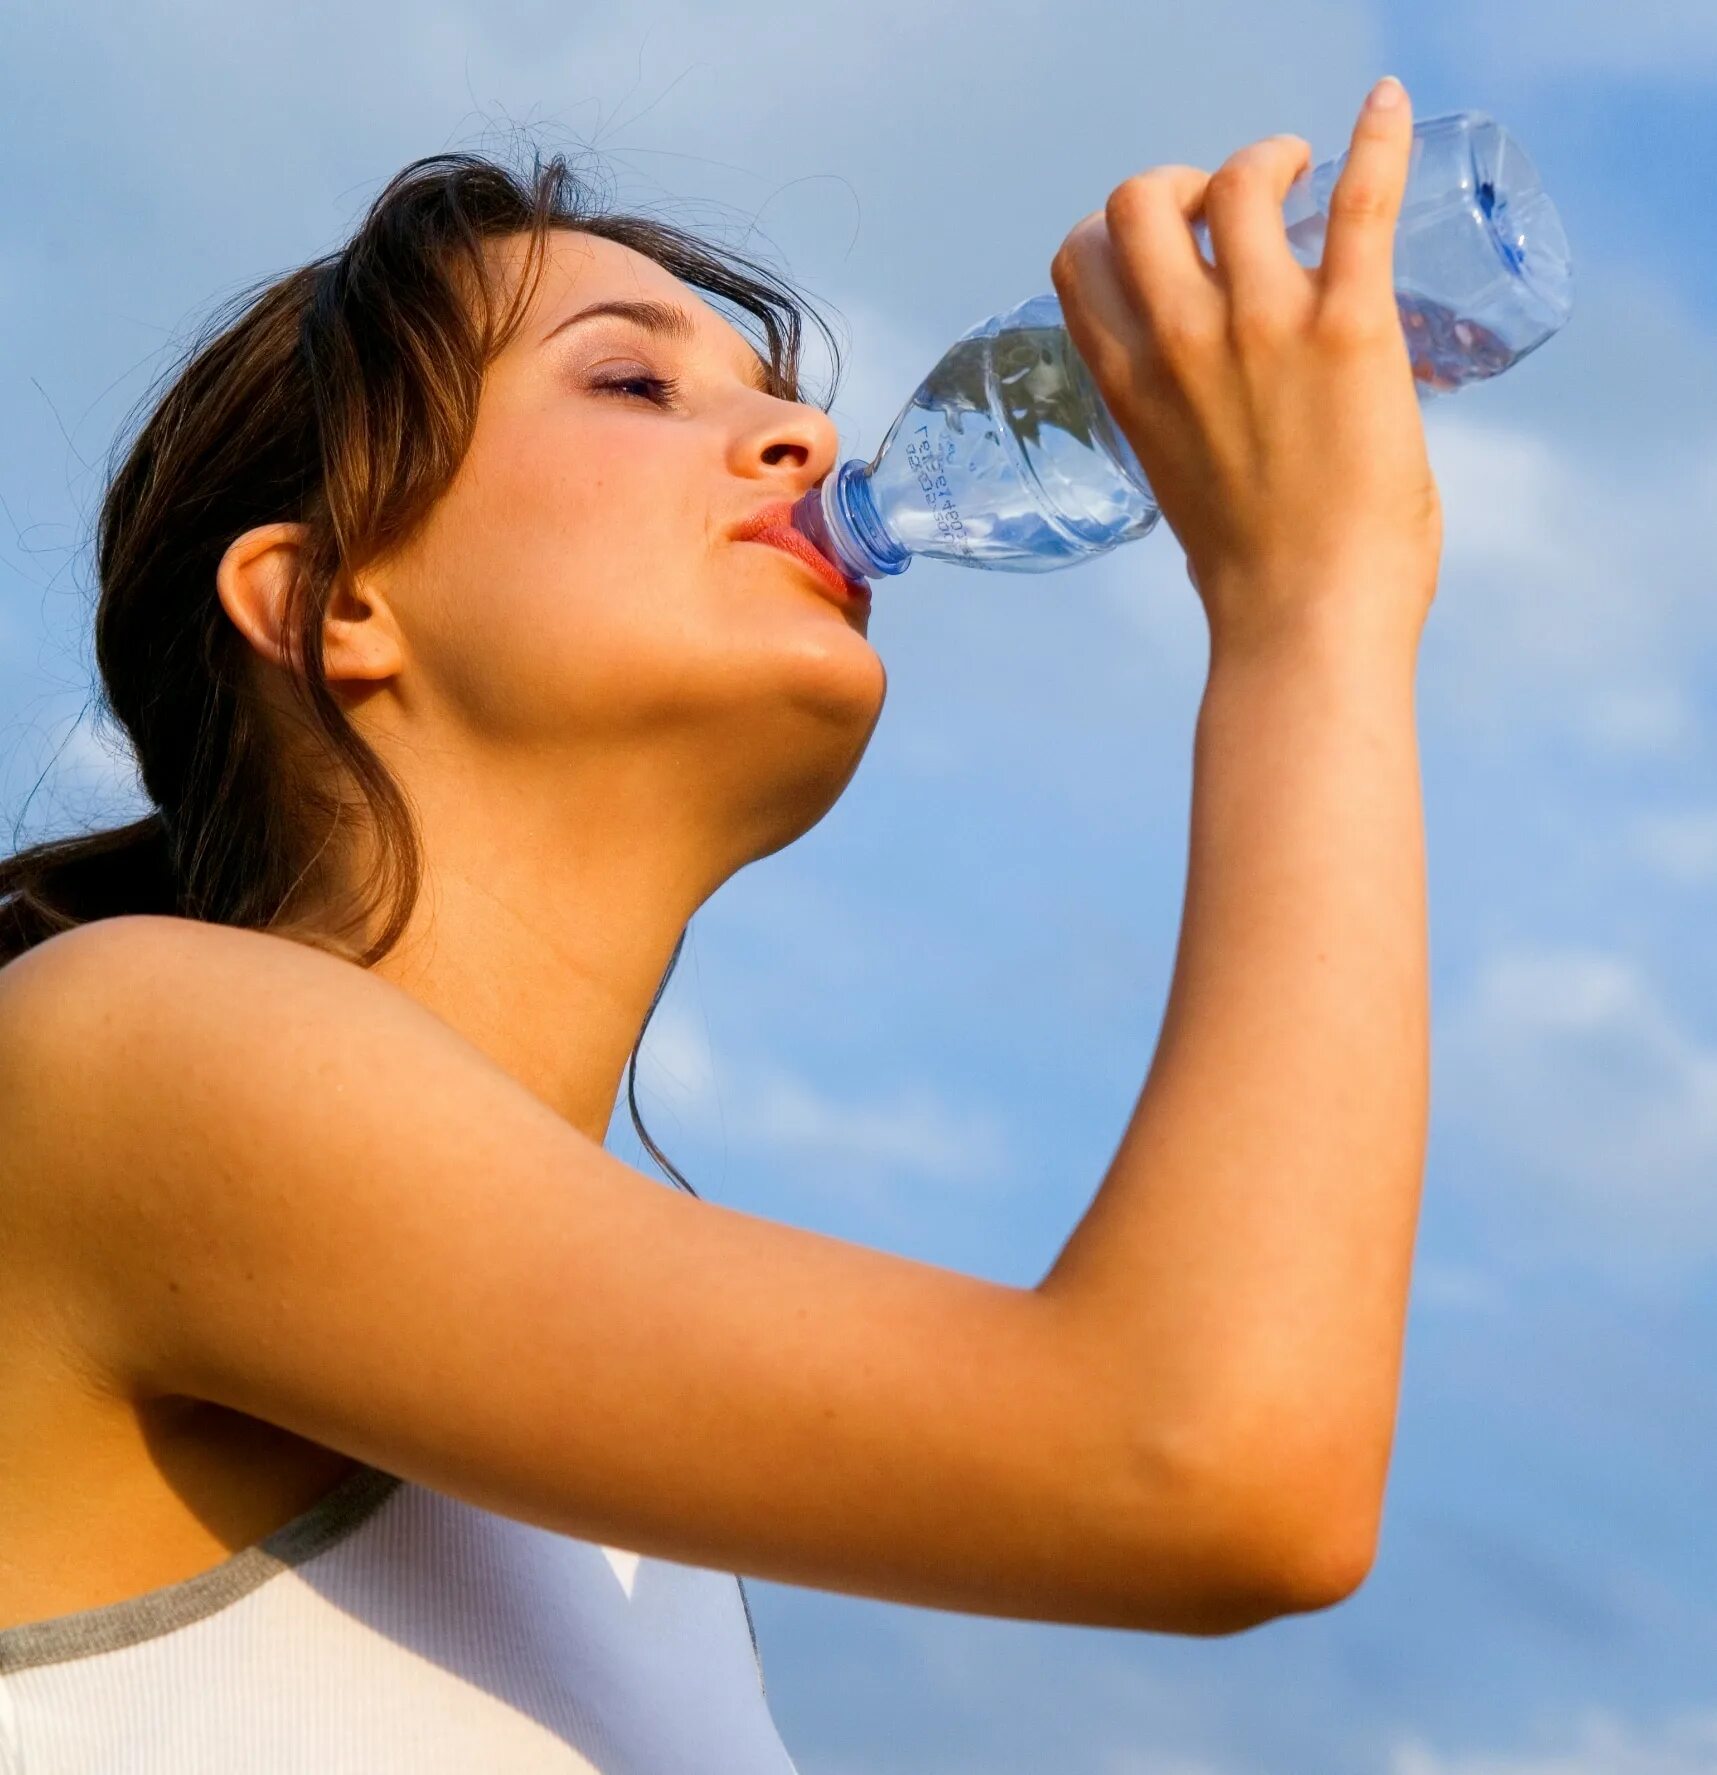 Жажда. Пить воду. Питье воды. Человек пьет воду. Девушка со стаканом воды.